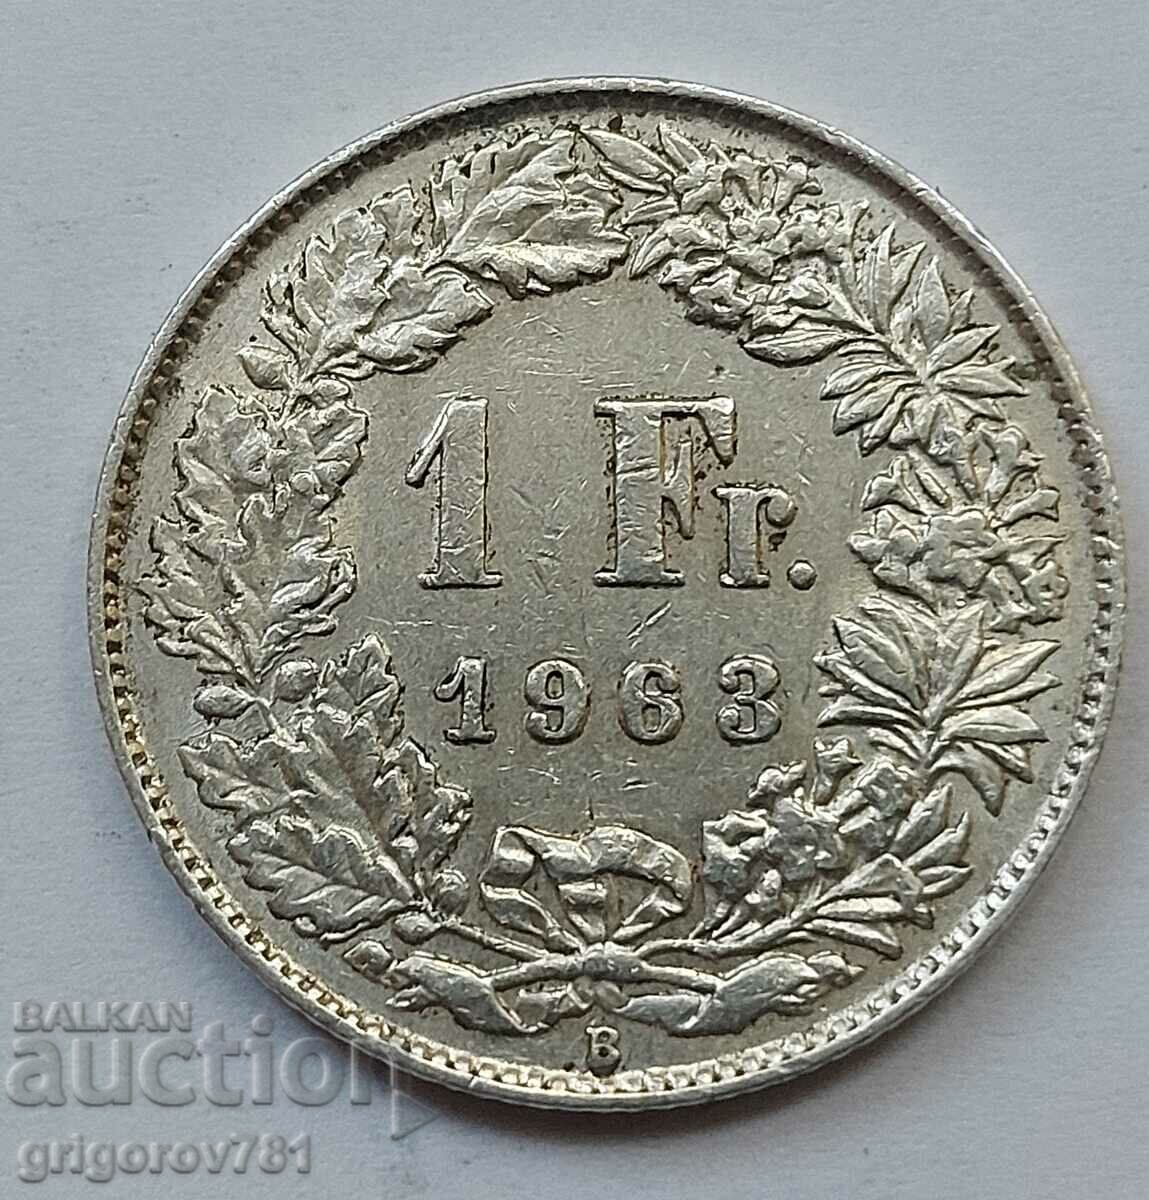 Ασημένιο 1 Φράγκο Ελβετία 1963 Β - Ασημένιο νόμισμα #11